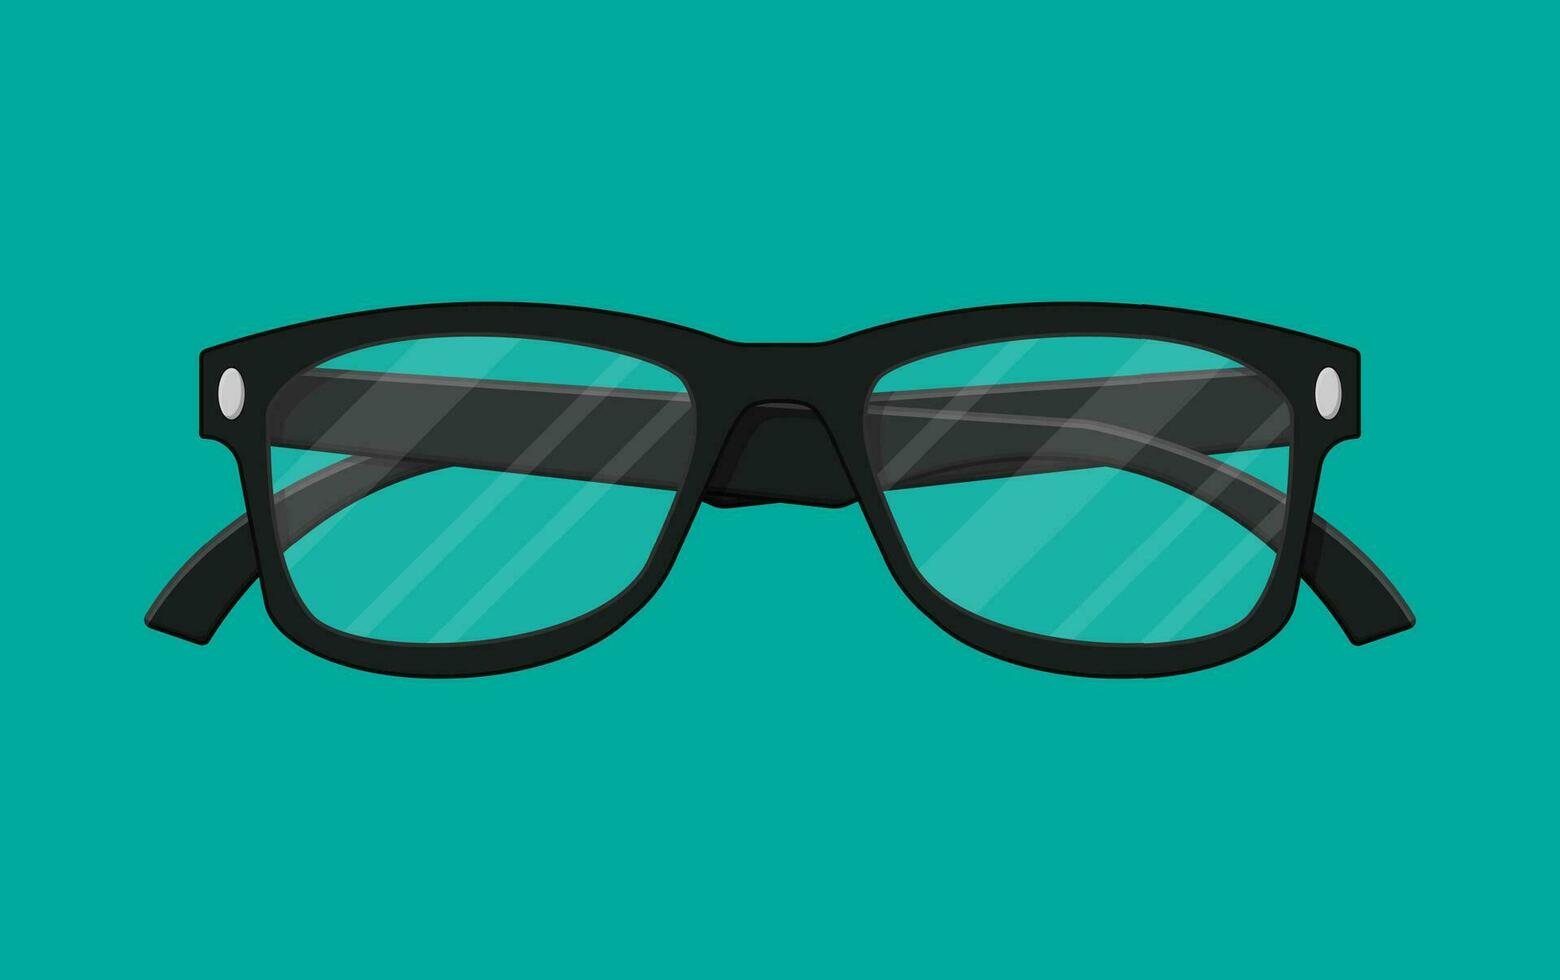 el plastico enmarcado lentes aislado en verde. retro estilo anteojos leyendo ojo lentes en plano estilo. accesorio para ojo proteccion. vector ilustración